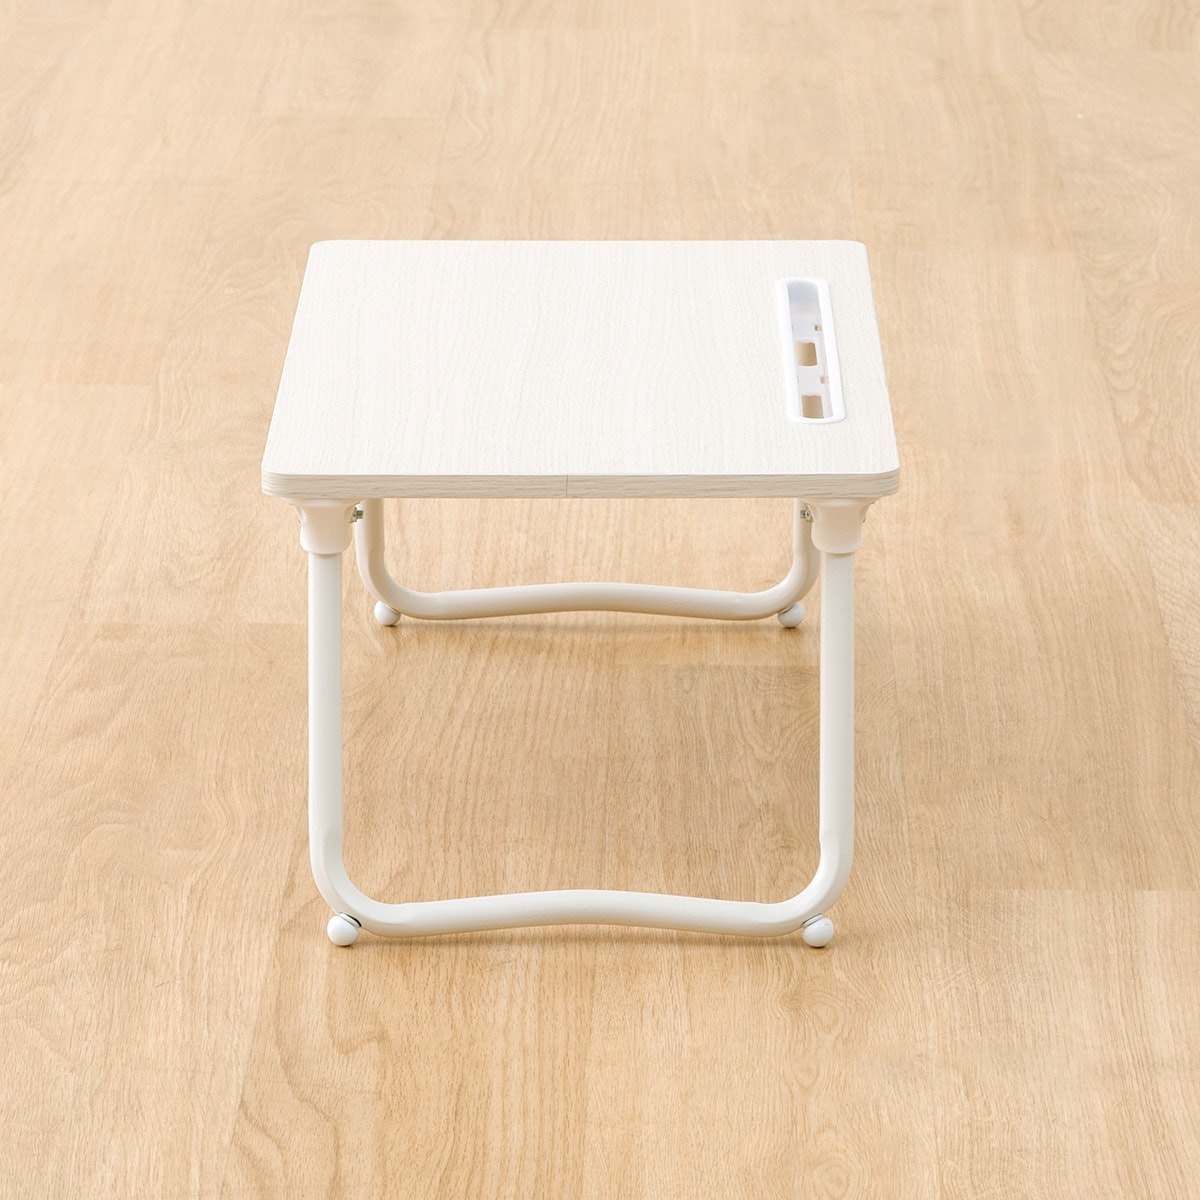  width 48cm. legs Mini table folding table (LX1 4830 white woshu)nitoli